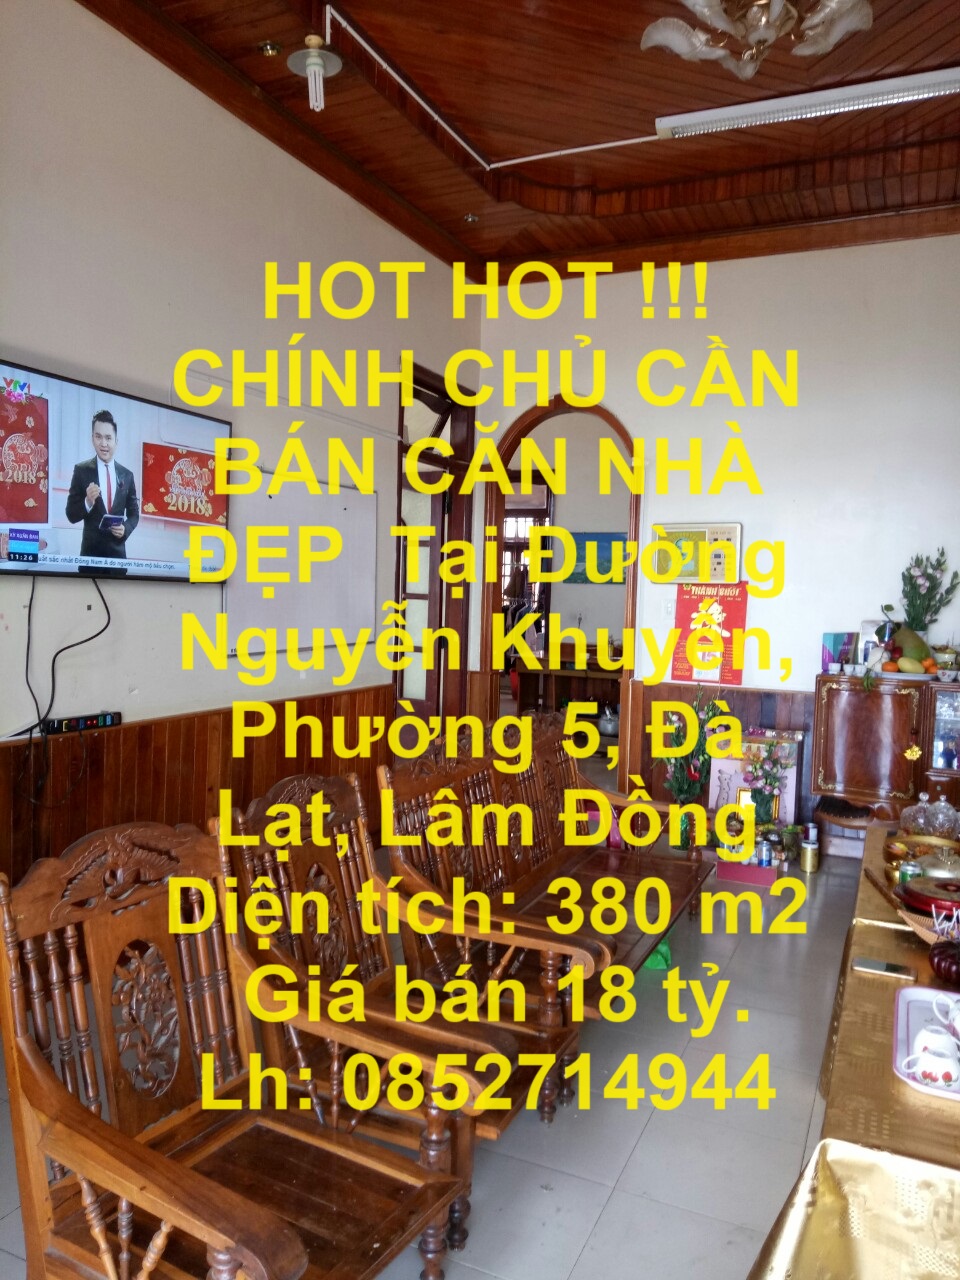 HOT HOT !!!  CHÍNH CHỦ CẦN BÁN CĂN NHÀ ĐẸP  Tại Đường Nguyễn Khuyến, Phường 5, Đà Lạt, Lâm Đồng - Ảnh chính